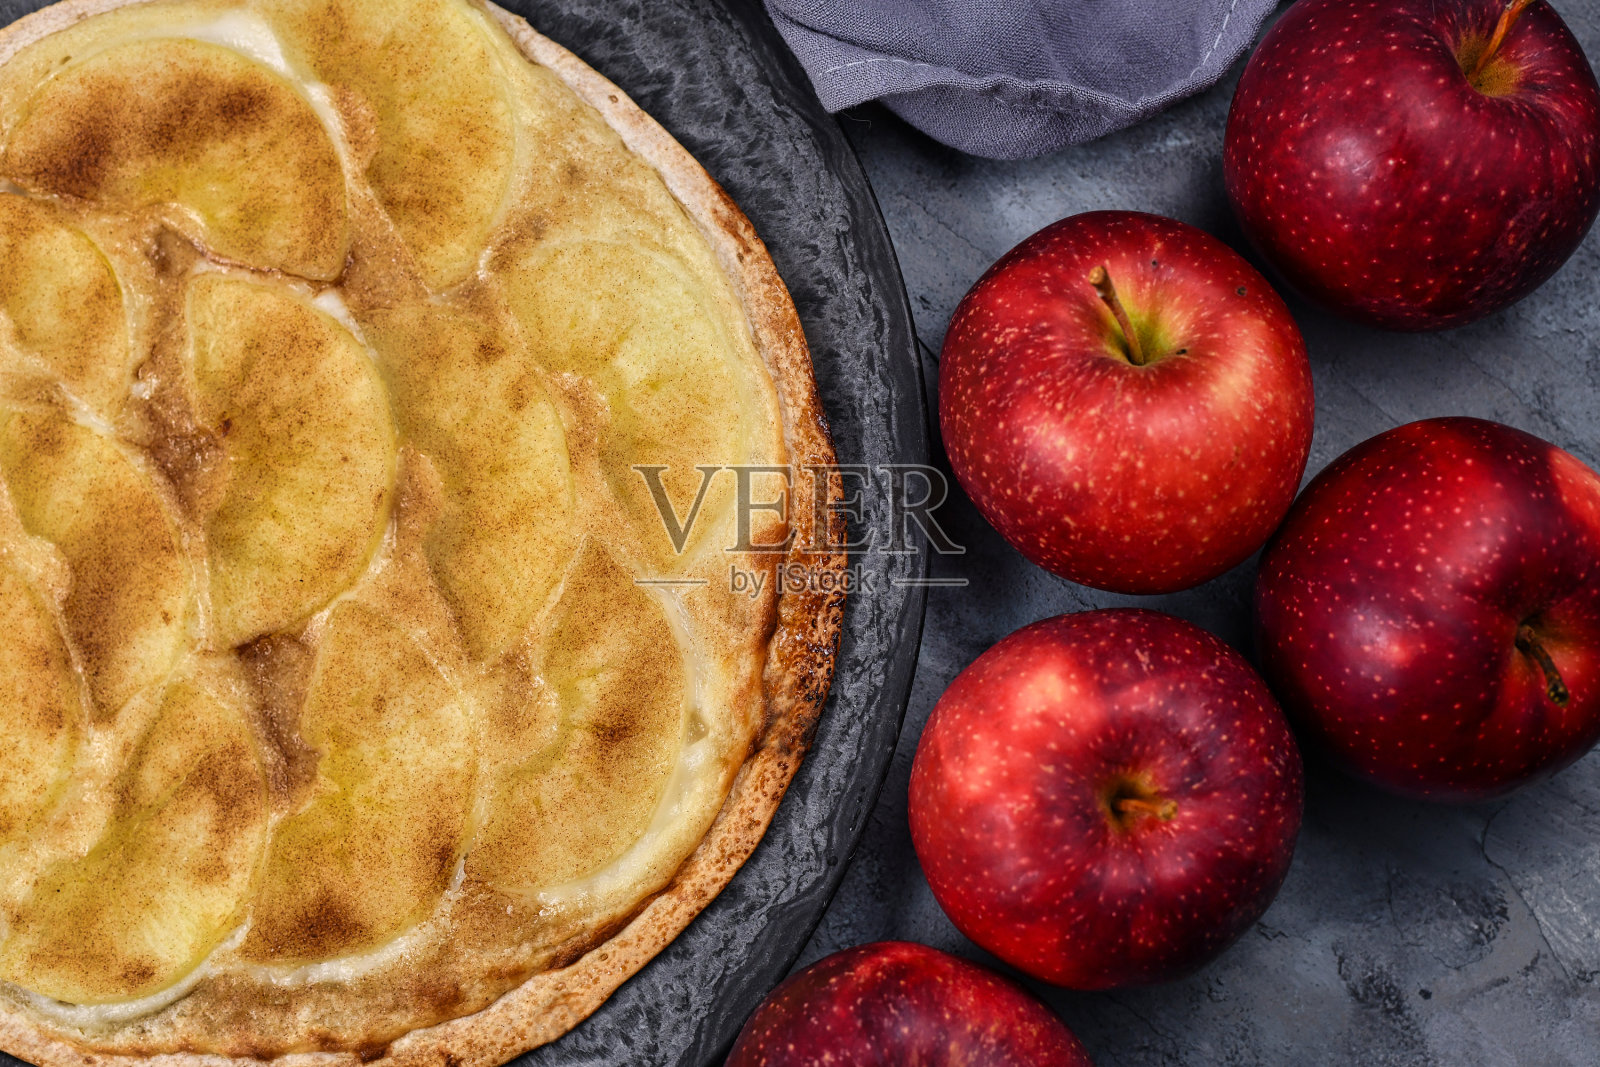 来自德法接壤的阿尔萨斯地区的“火馅饼”或“火馅饼”，类似于薄披萨，上面覆盖了苹果片、糖和肉桂照片摄影图片